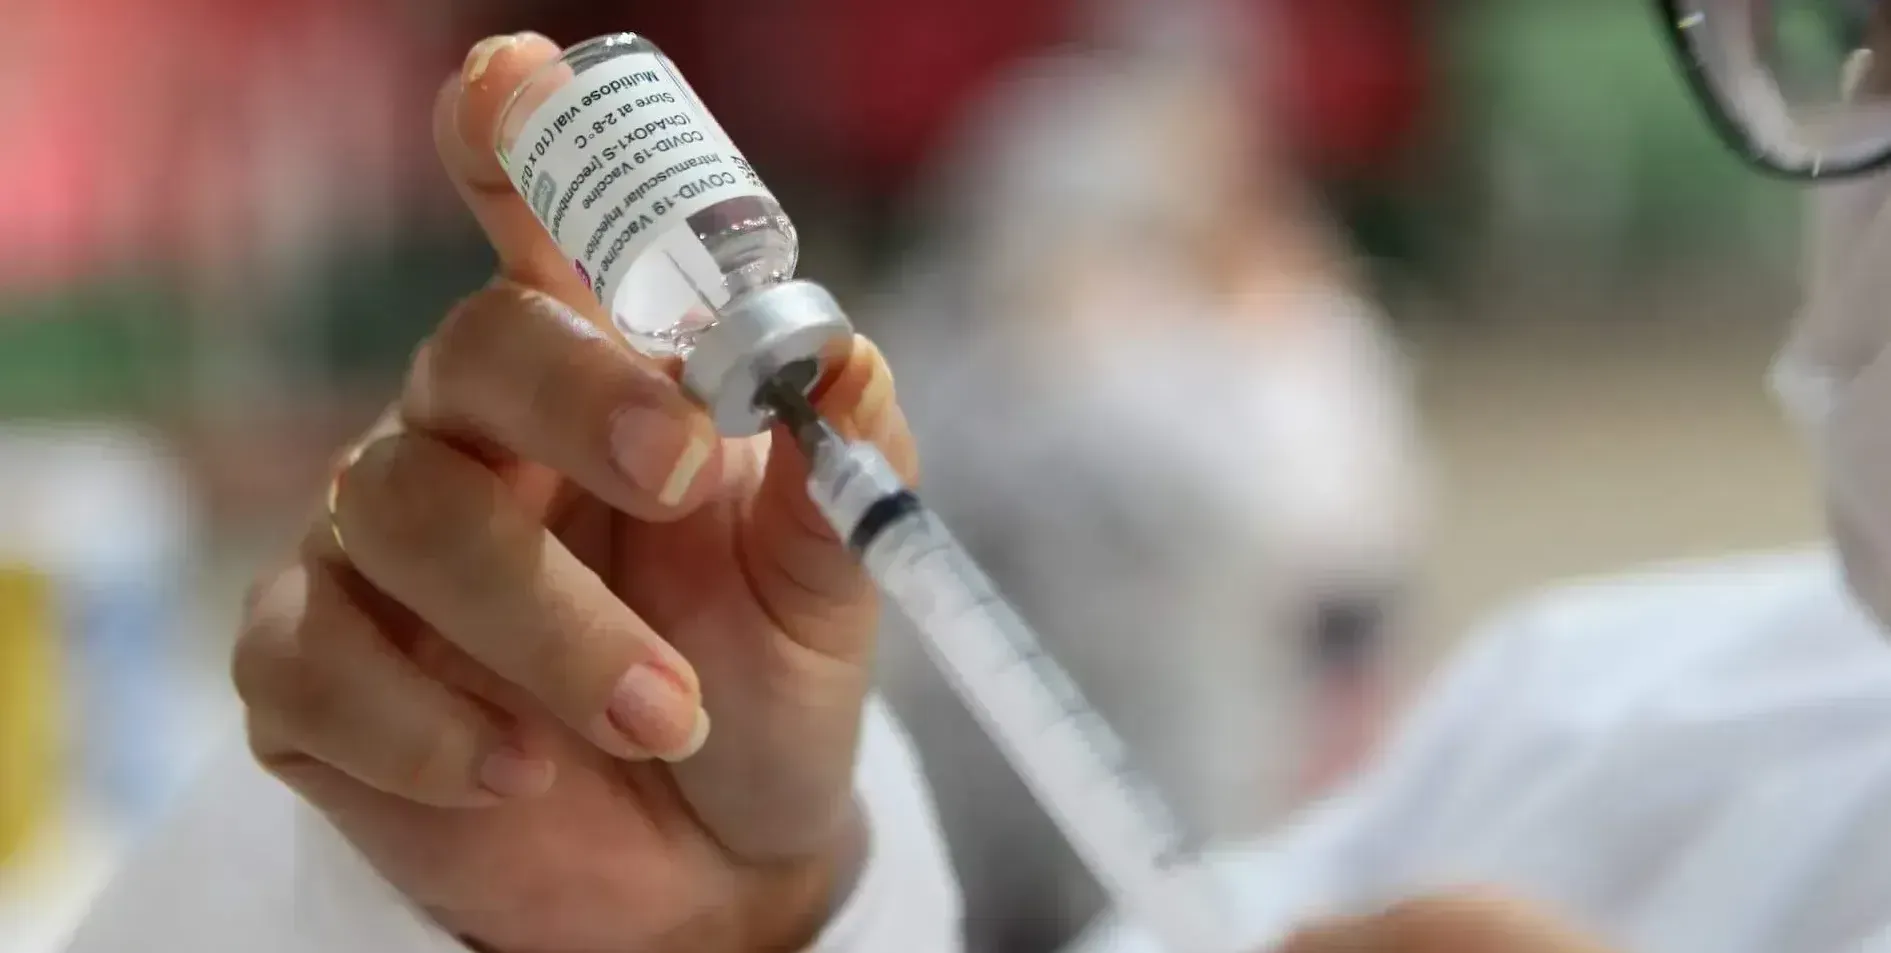   Bertioga realiza ‘Dia D’ de vacinação contra a Covid-19 nesta quarta   